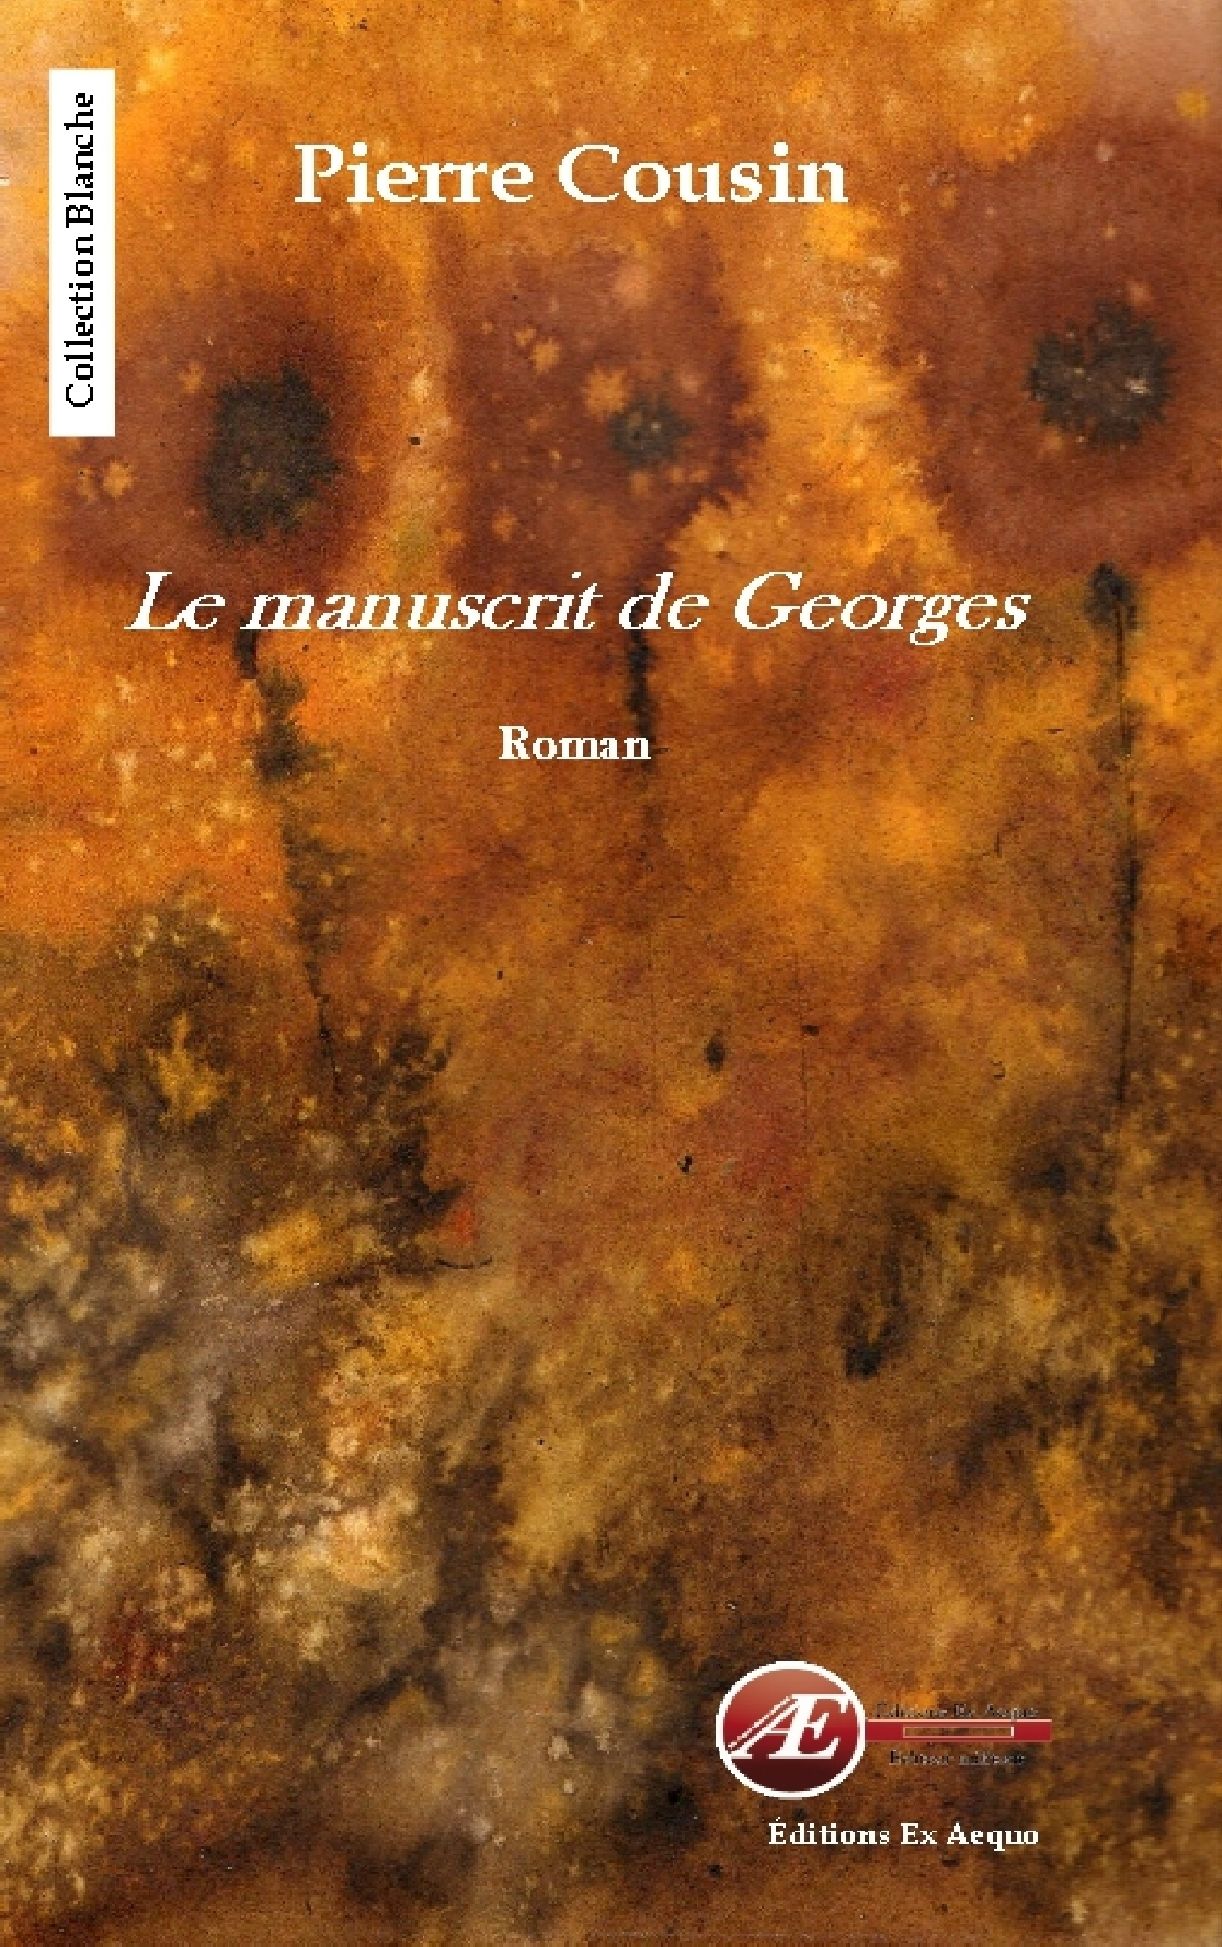 You are currently viewing Le manuscrit de Georges, de Pierre Cousin